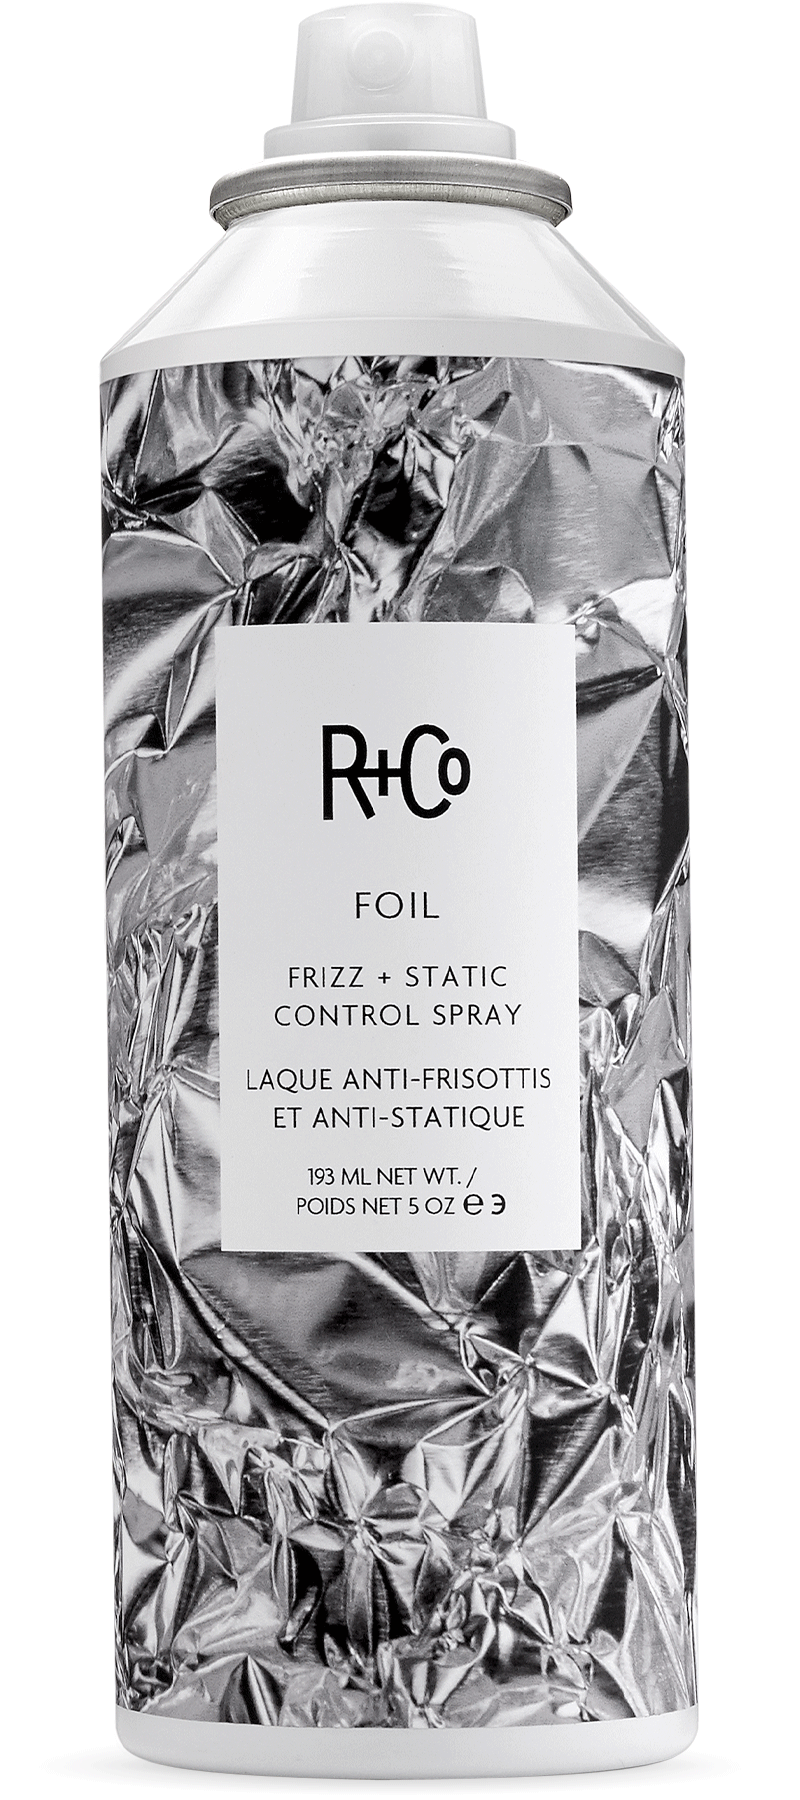 R+Co Foil Frizz + Static Control Spray